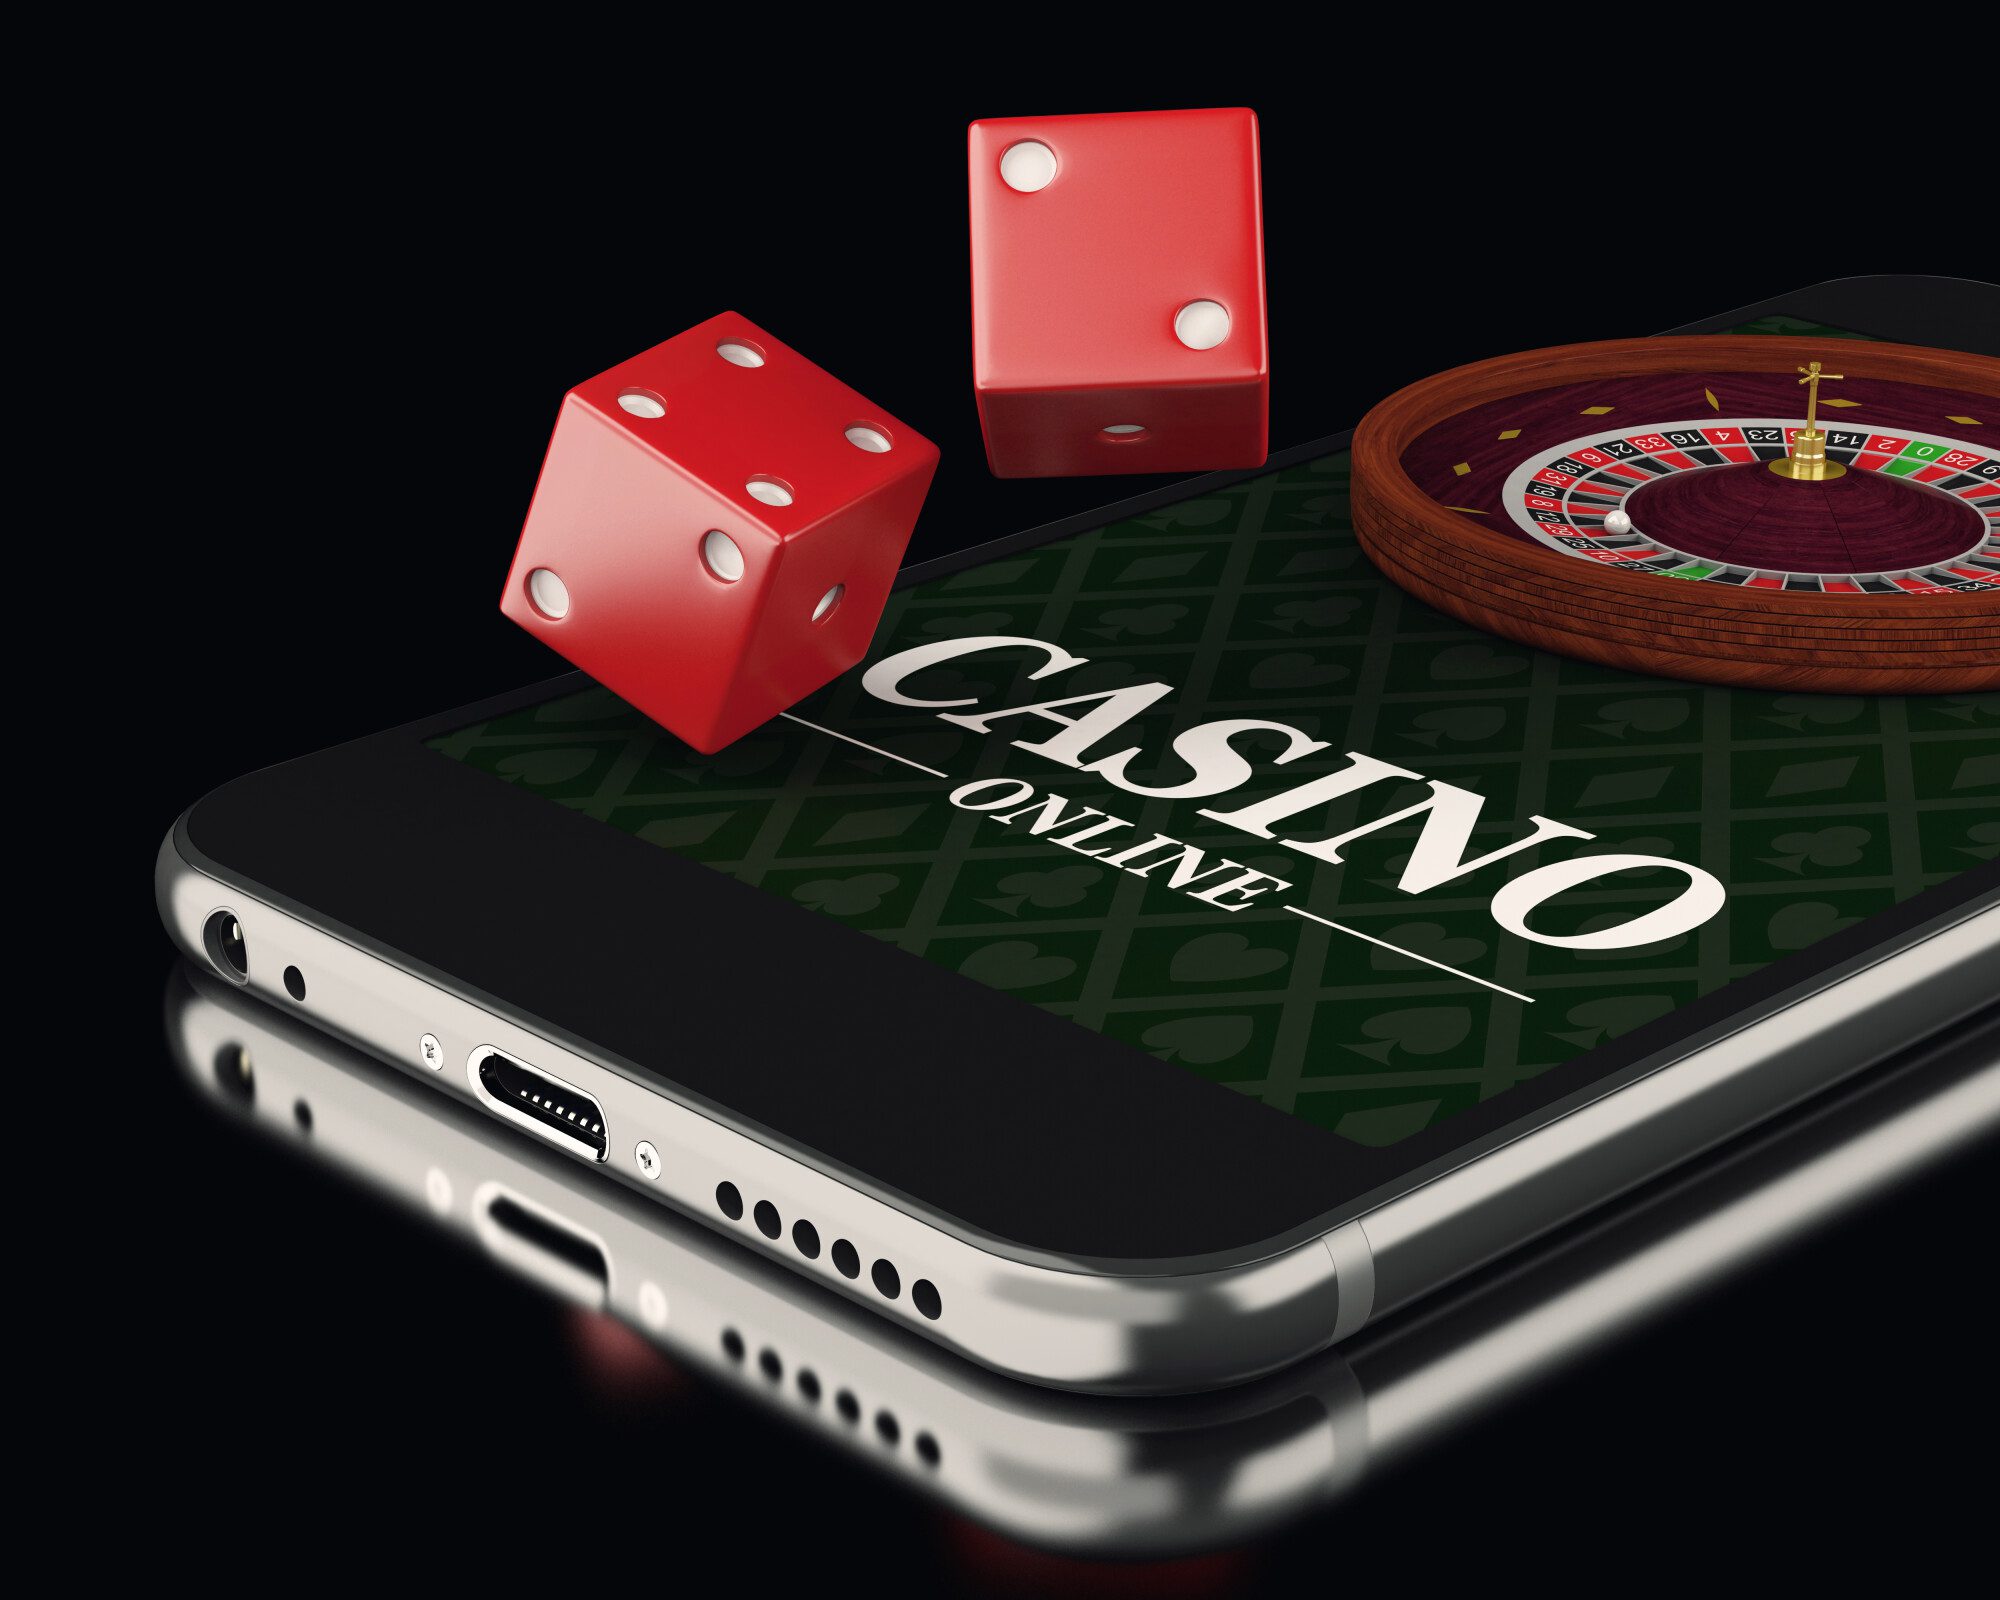 Mobile casino gaming. Казино. Мобильное казино. Мобильное интернет казино. Интернет казино мобильный телефон.